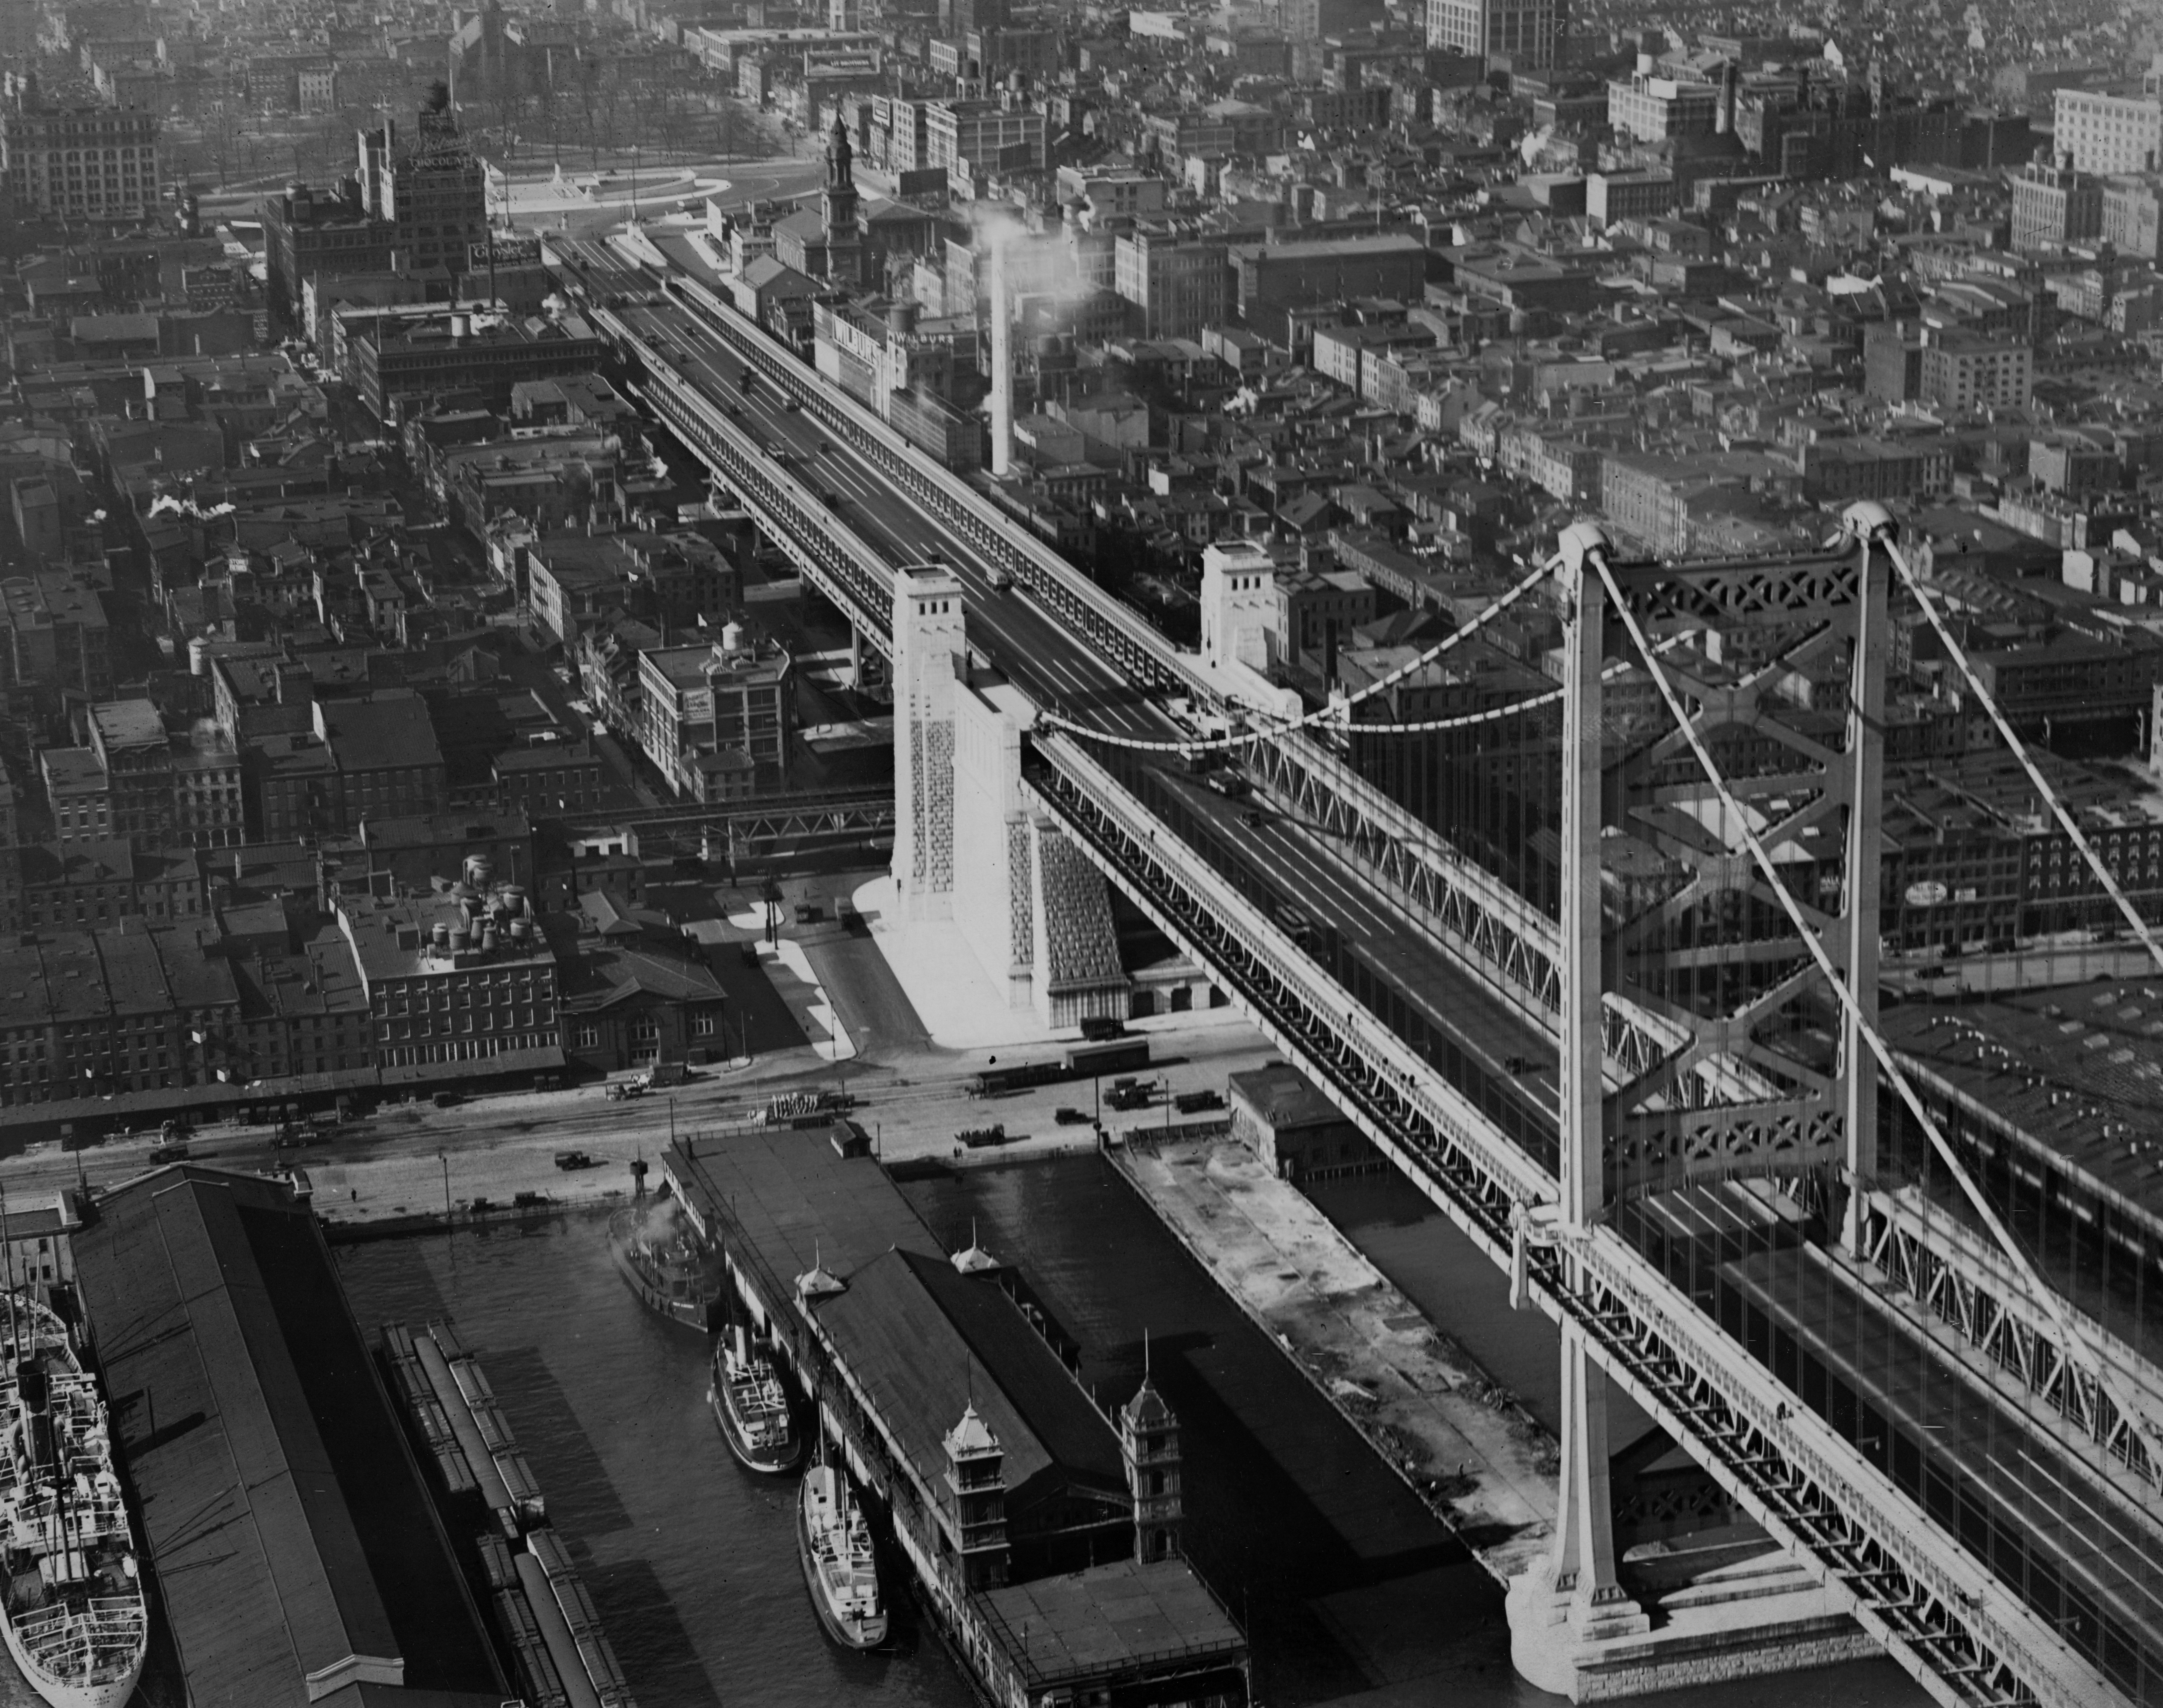 Philadelphia Bridge approach showing pier abutment, 1926 (Image no. 6801)